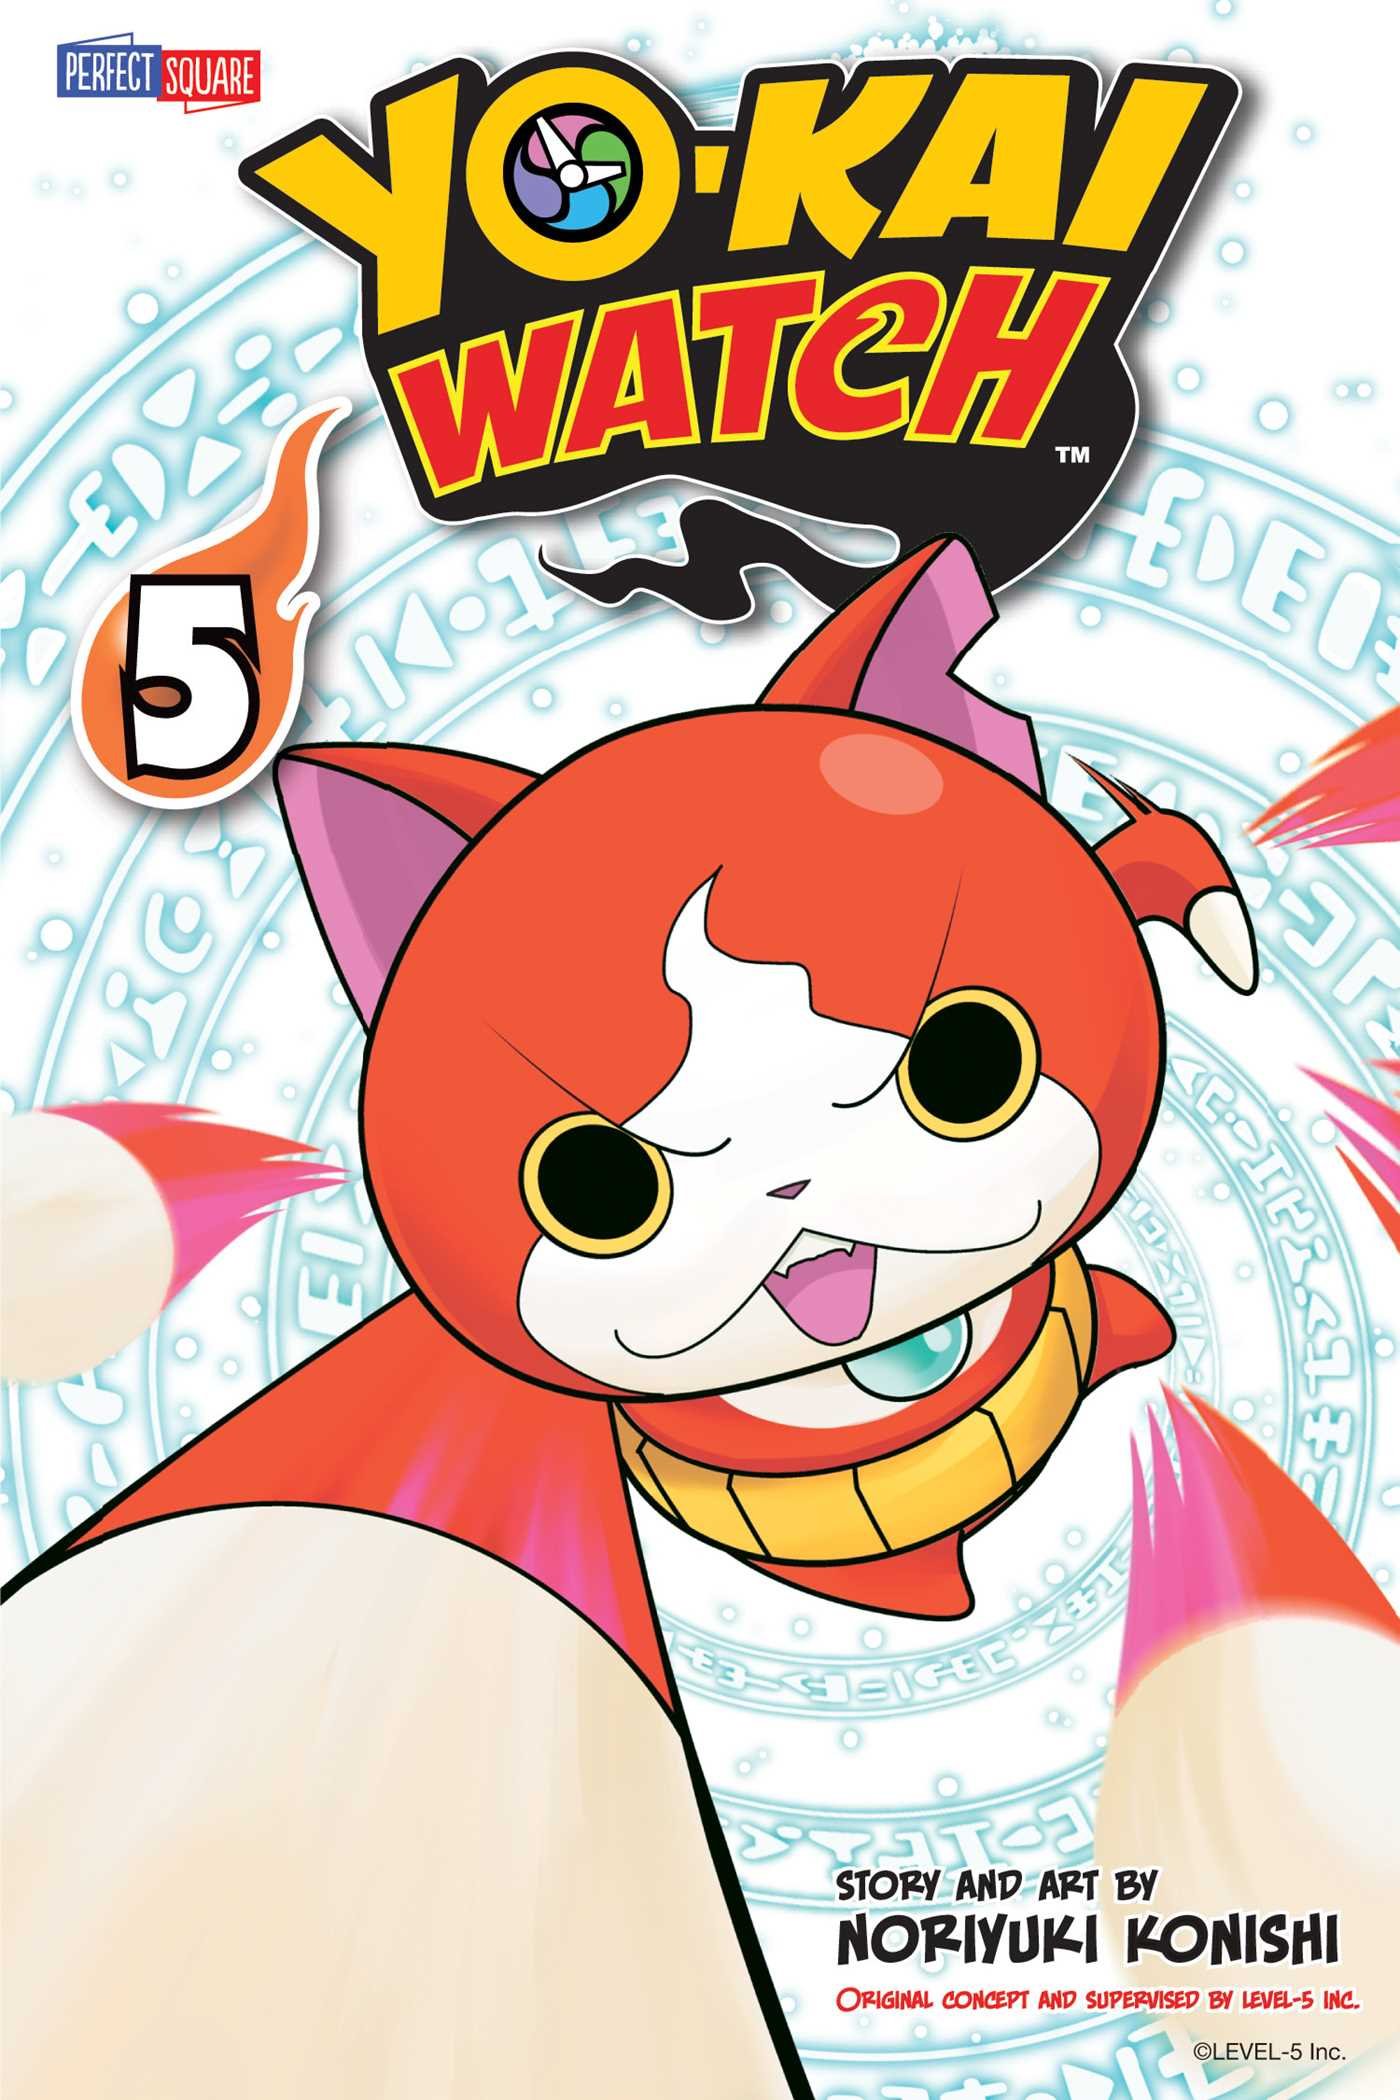 Yo-kai Watch (manga), Yo-kai Watch Wiki